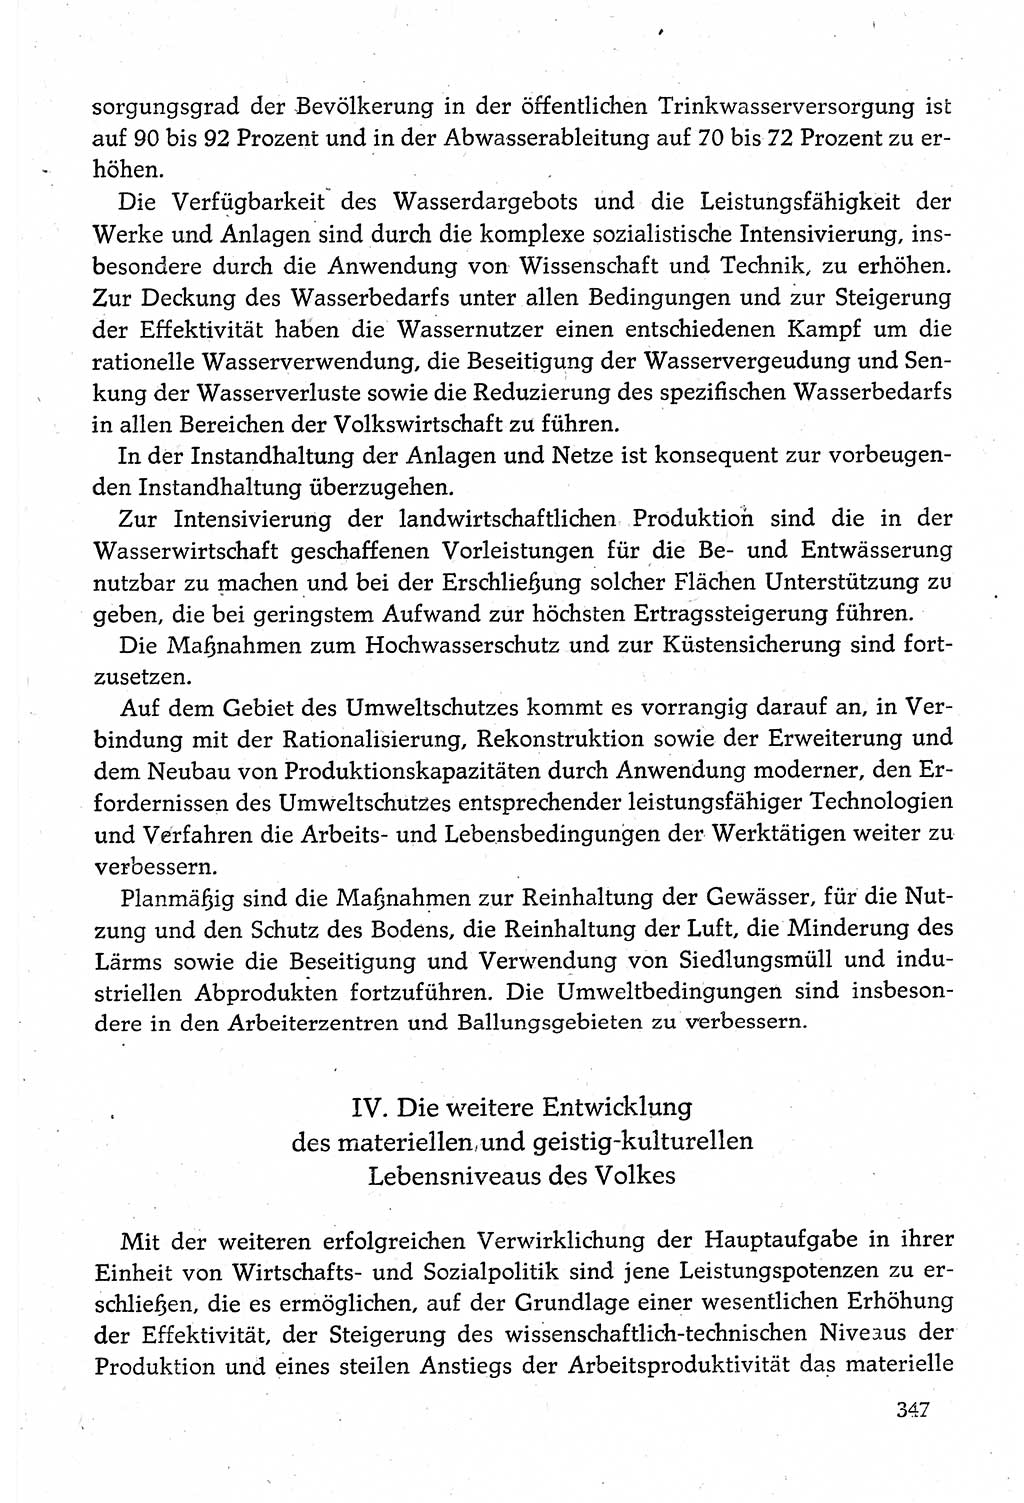 Dokumente der Sozialistischen Einheitspartei Deutschlands (SED) [Deutsche Demokratische Republik (DDR)] 1980-1981, Seite 347 (Dok. SED DDR 1980-1981, S. 347)